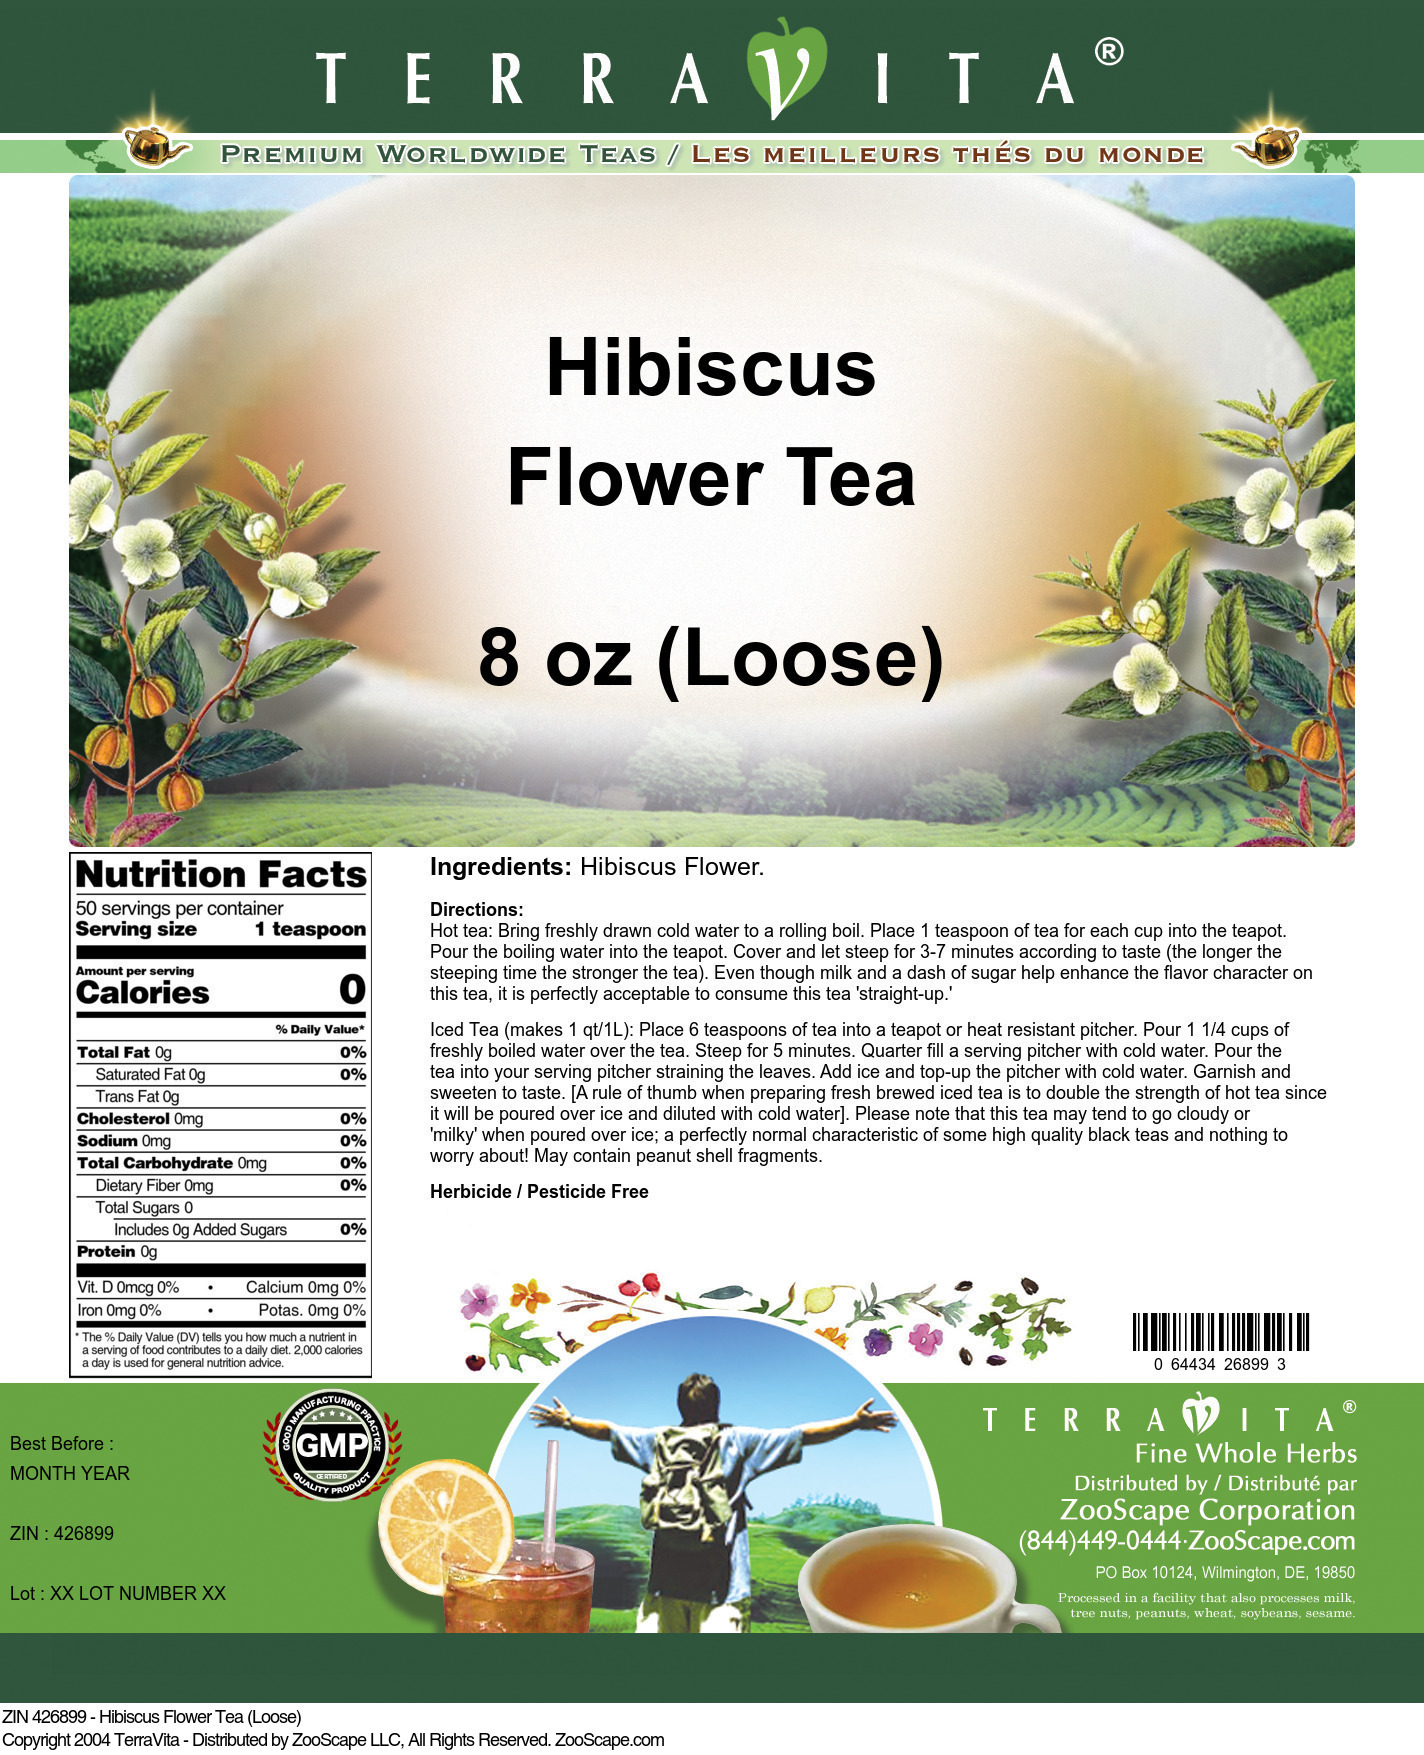 Hibiscus Flower Tea (Loose) - Label